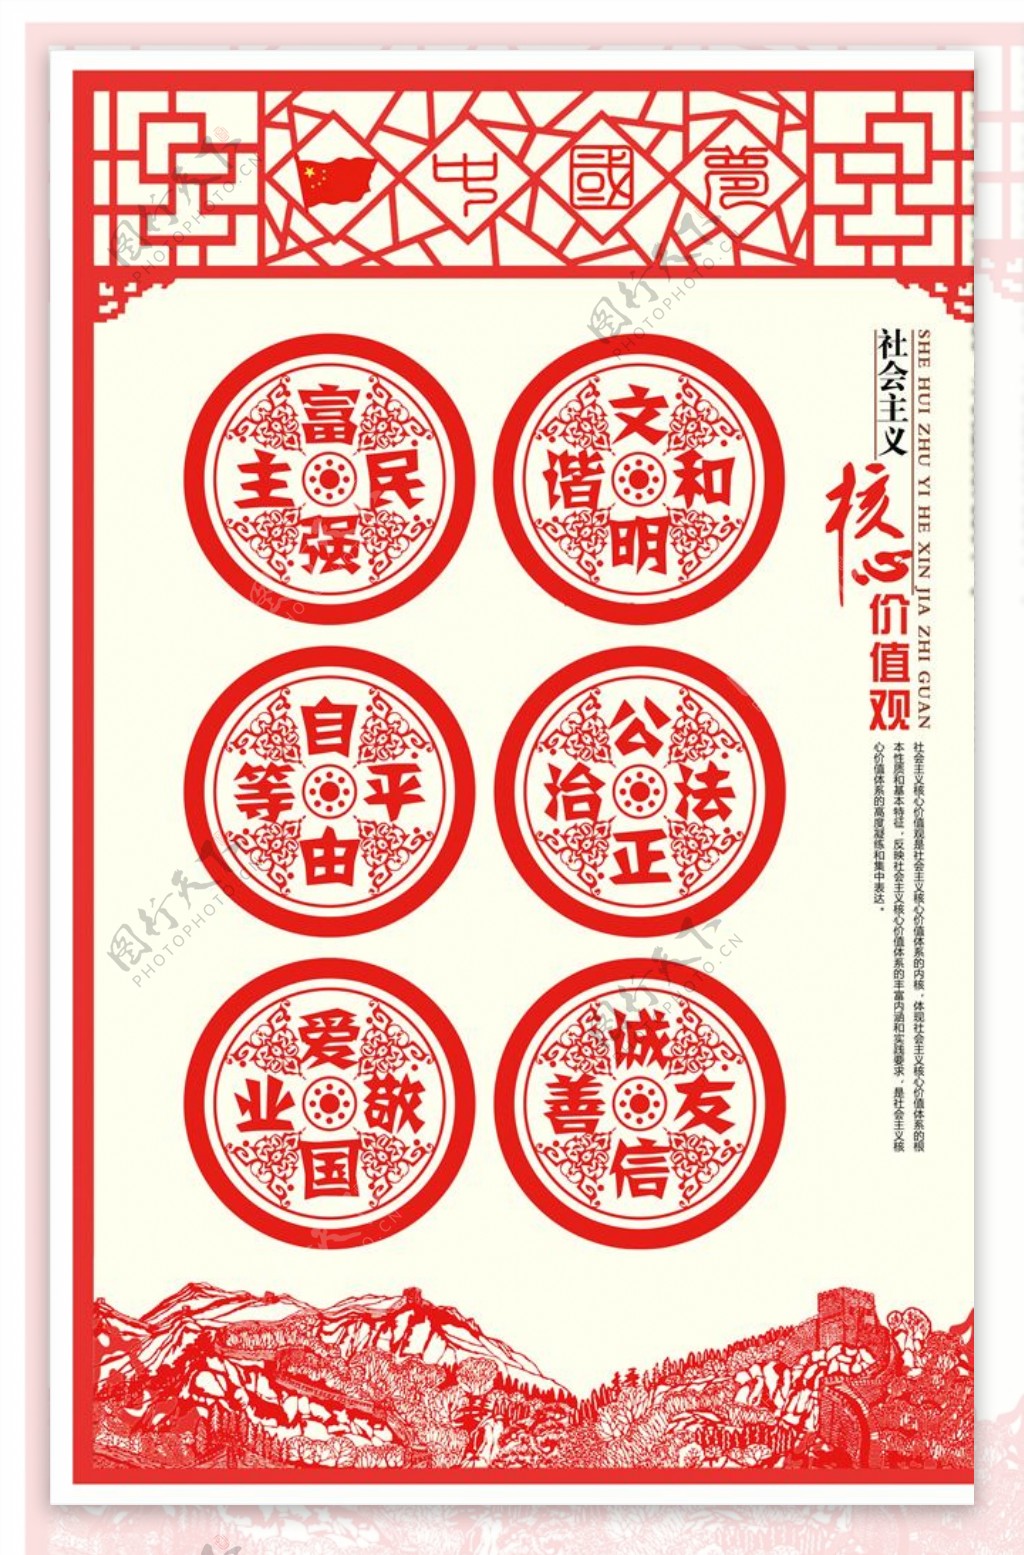 中国传统剪纸风格